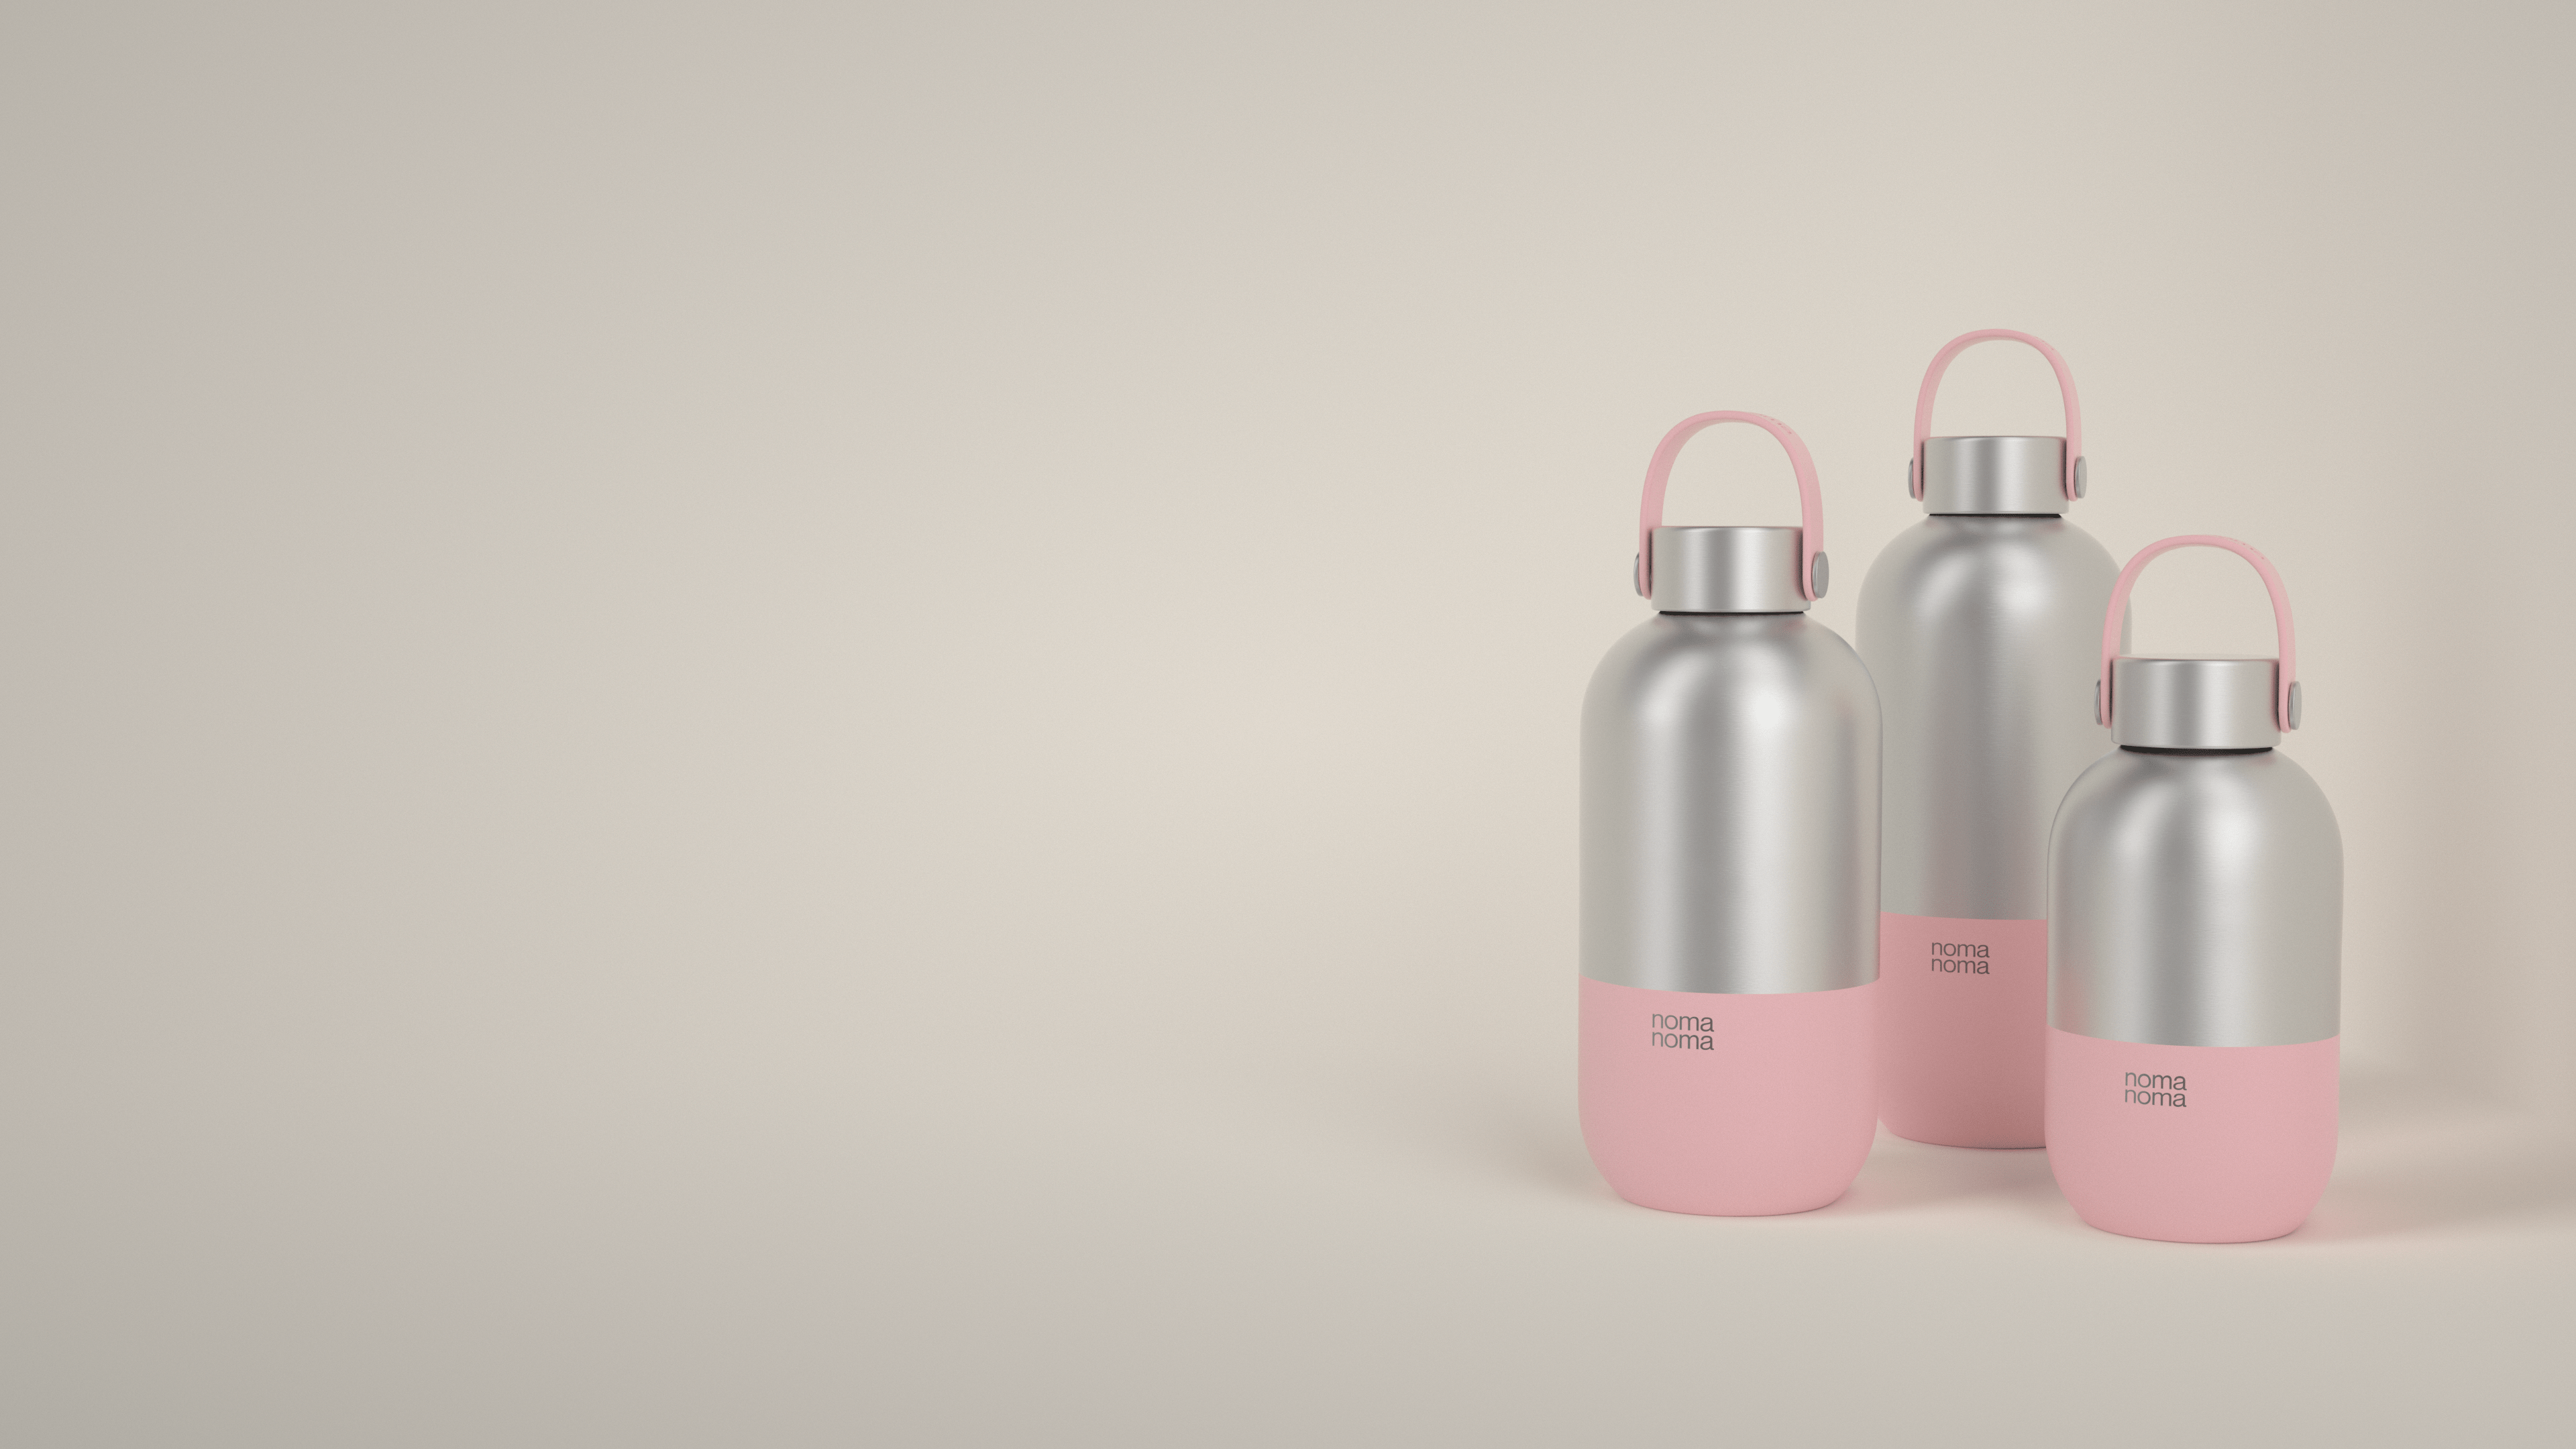 Die rosane Trinkflasche von noma noma gibt es in drei praktischen Größen.